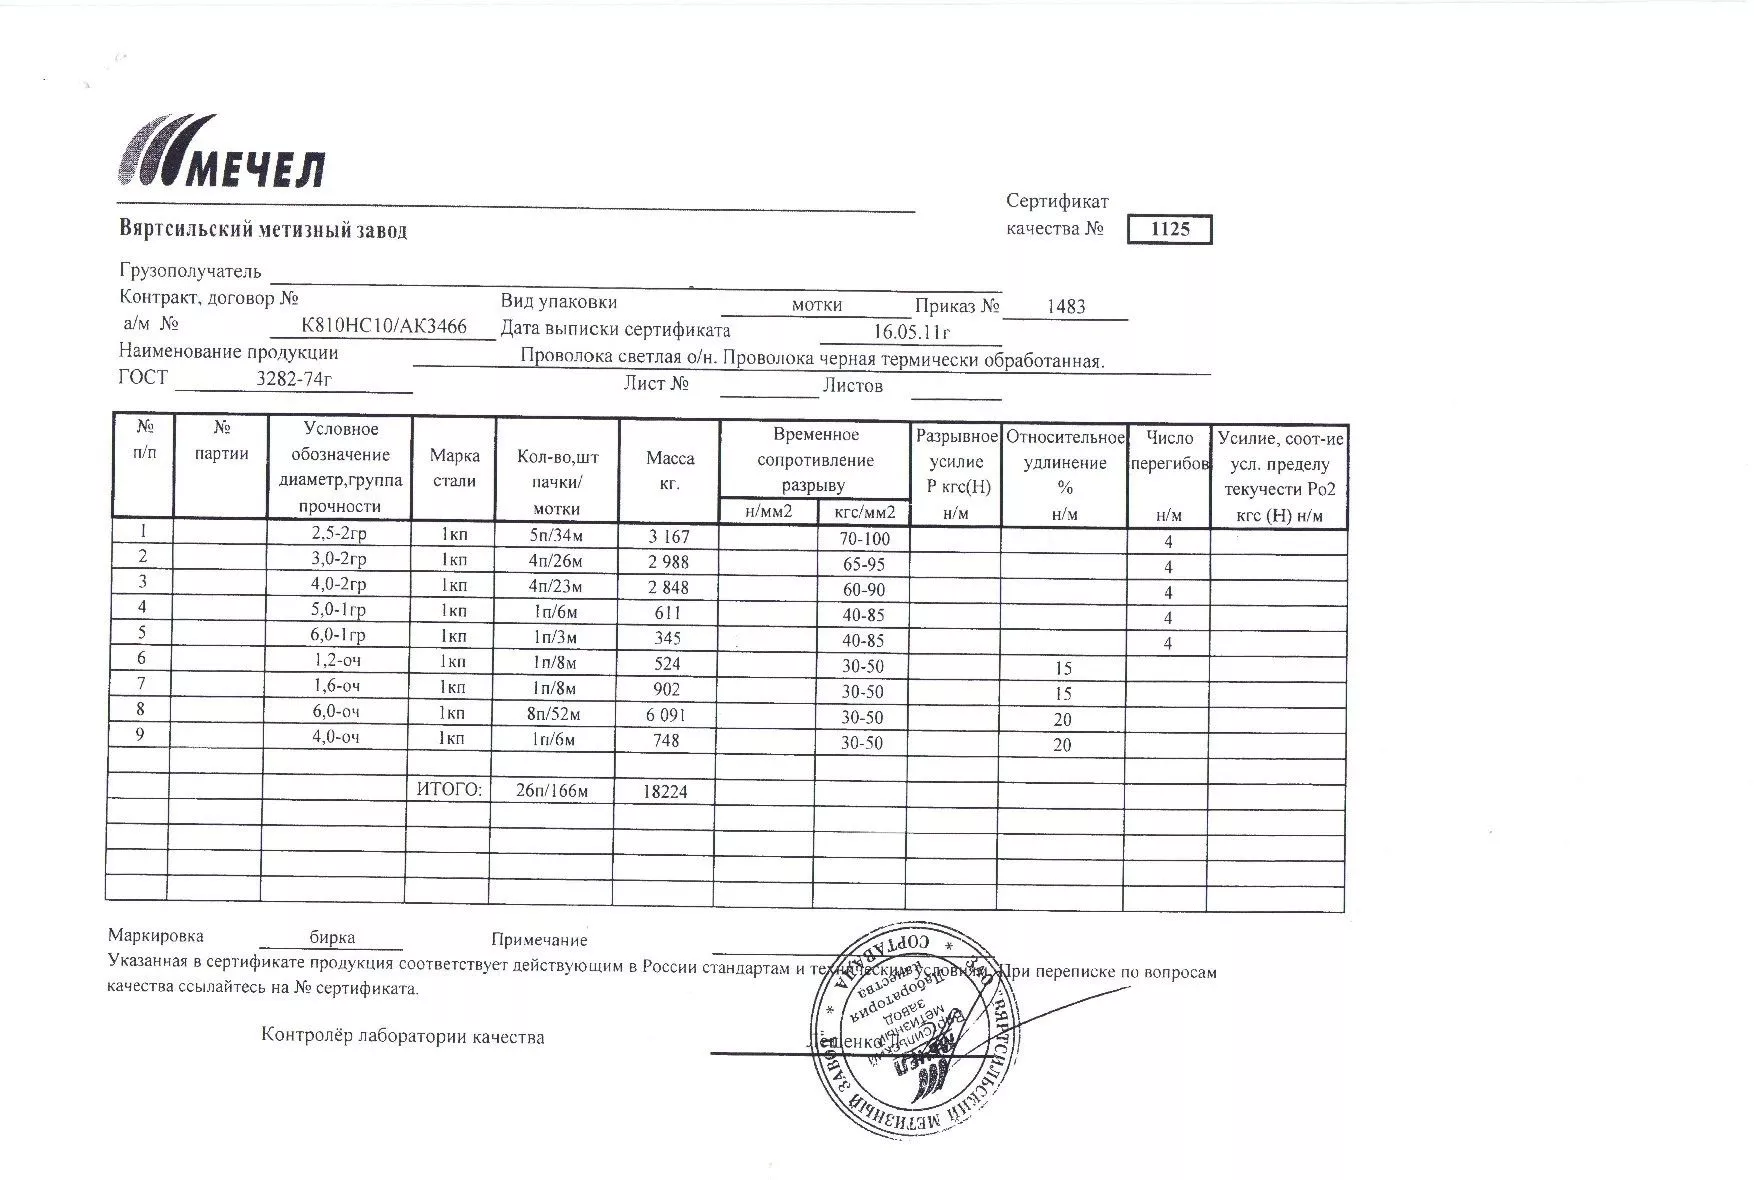 Сертификат на проволоку черную термически обработанную 6,0 от 2011-05